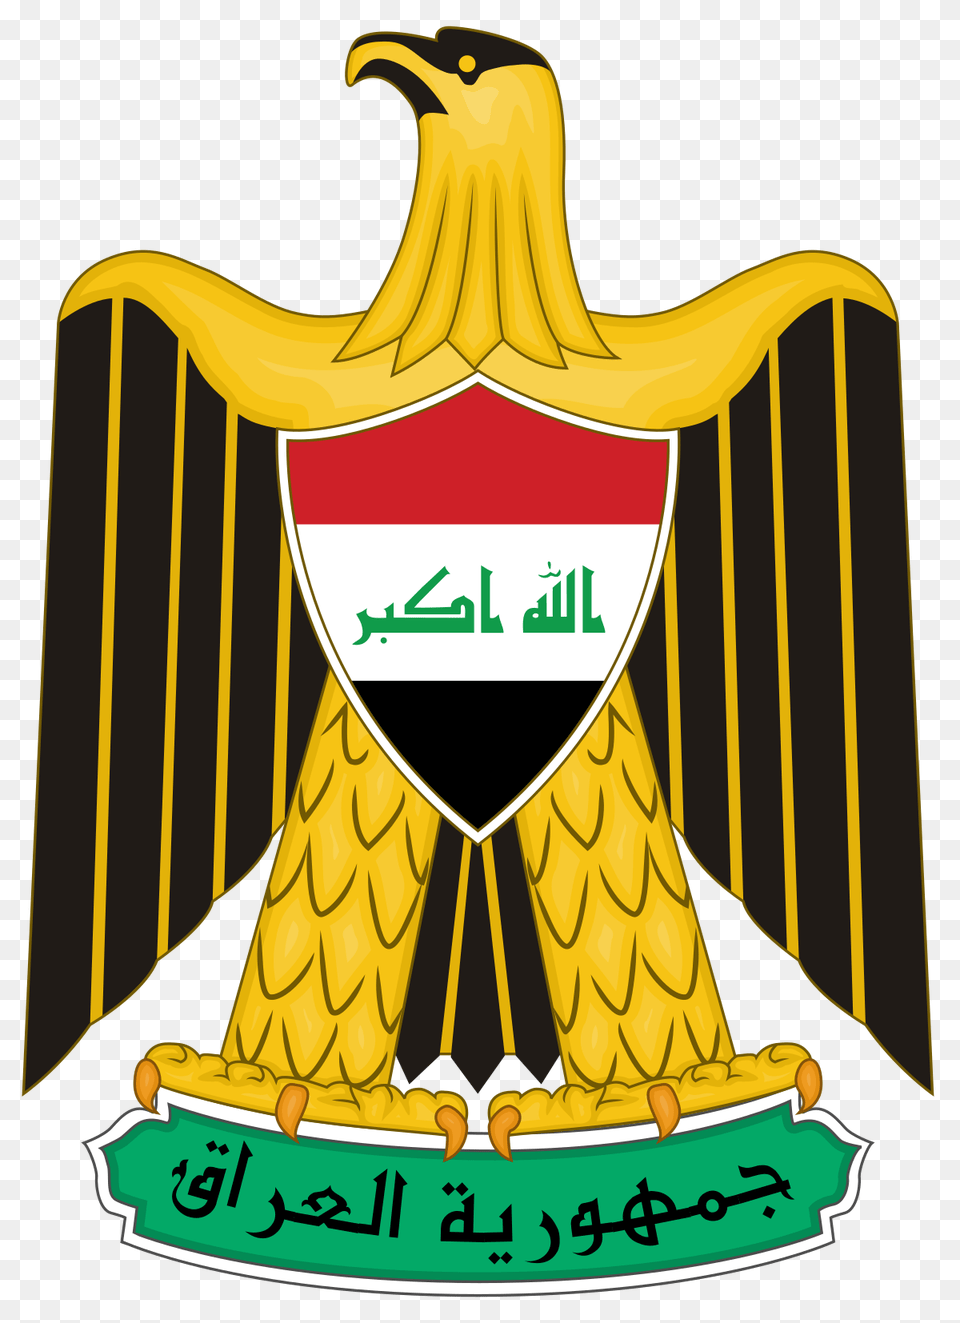 Coat Of Arms Of Iraq, Logo, Emblem, Symbol Free Png